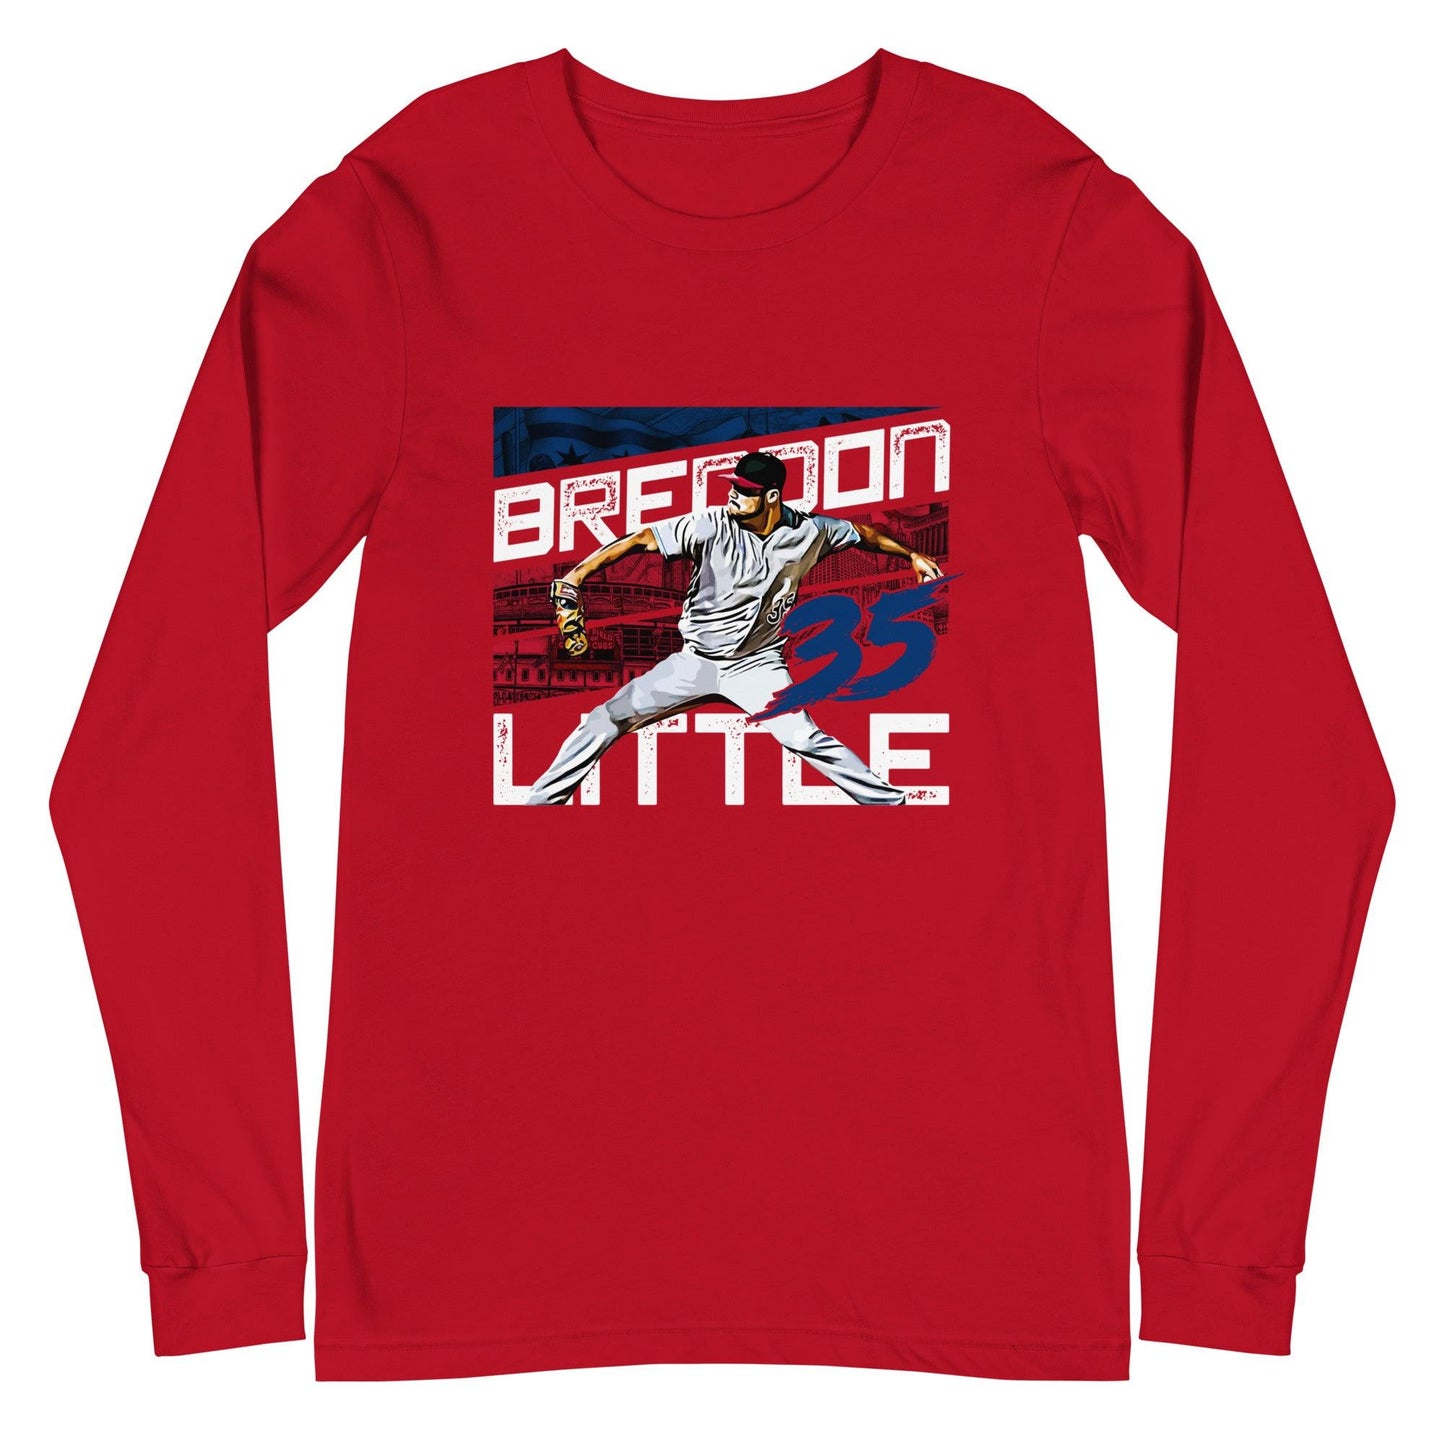 Brendon Little "35" Long Sleeve Tee - Fan Arch